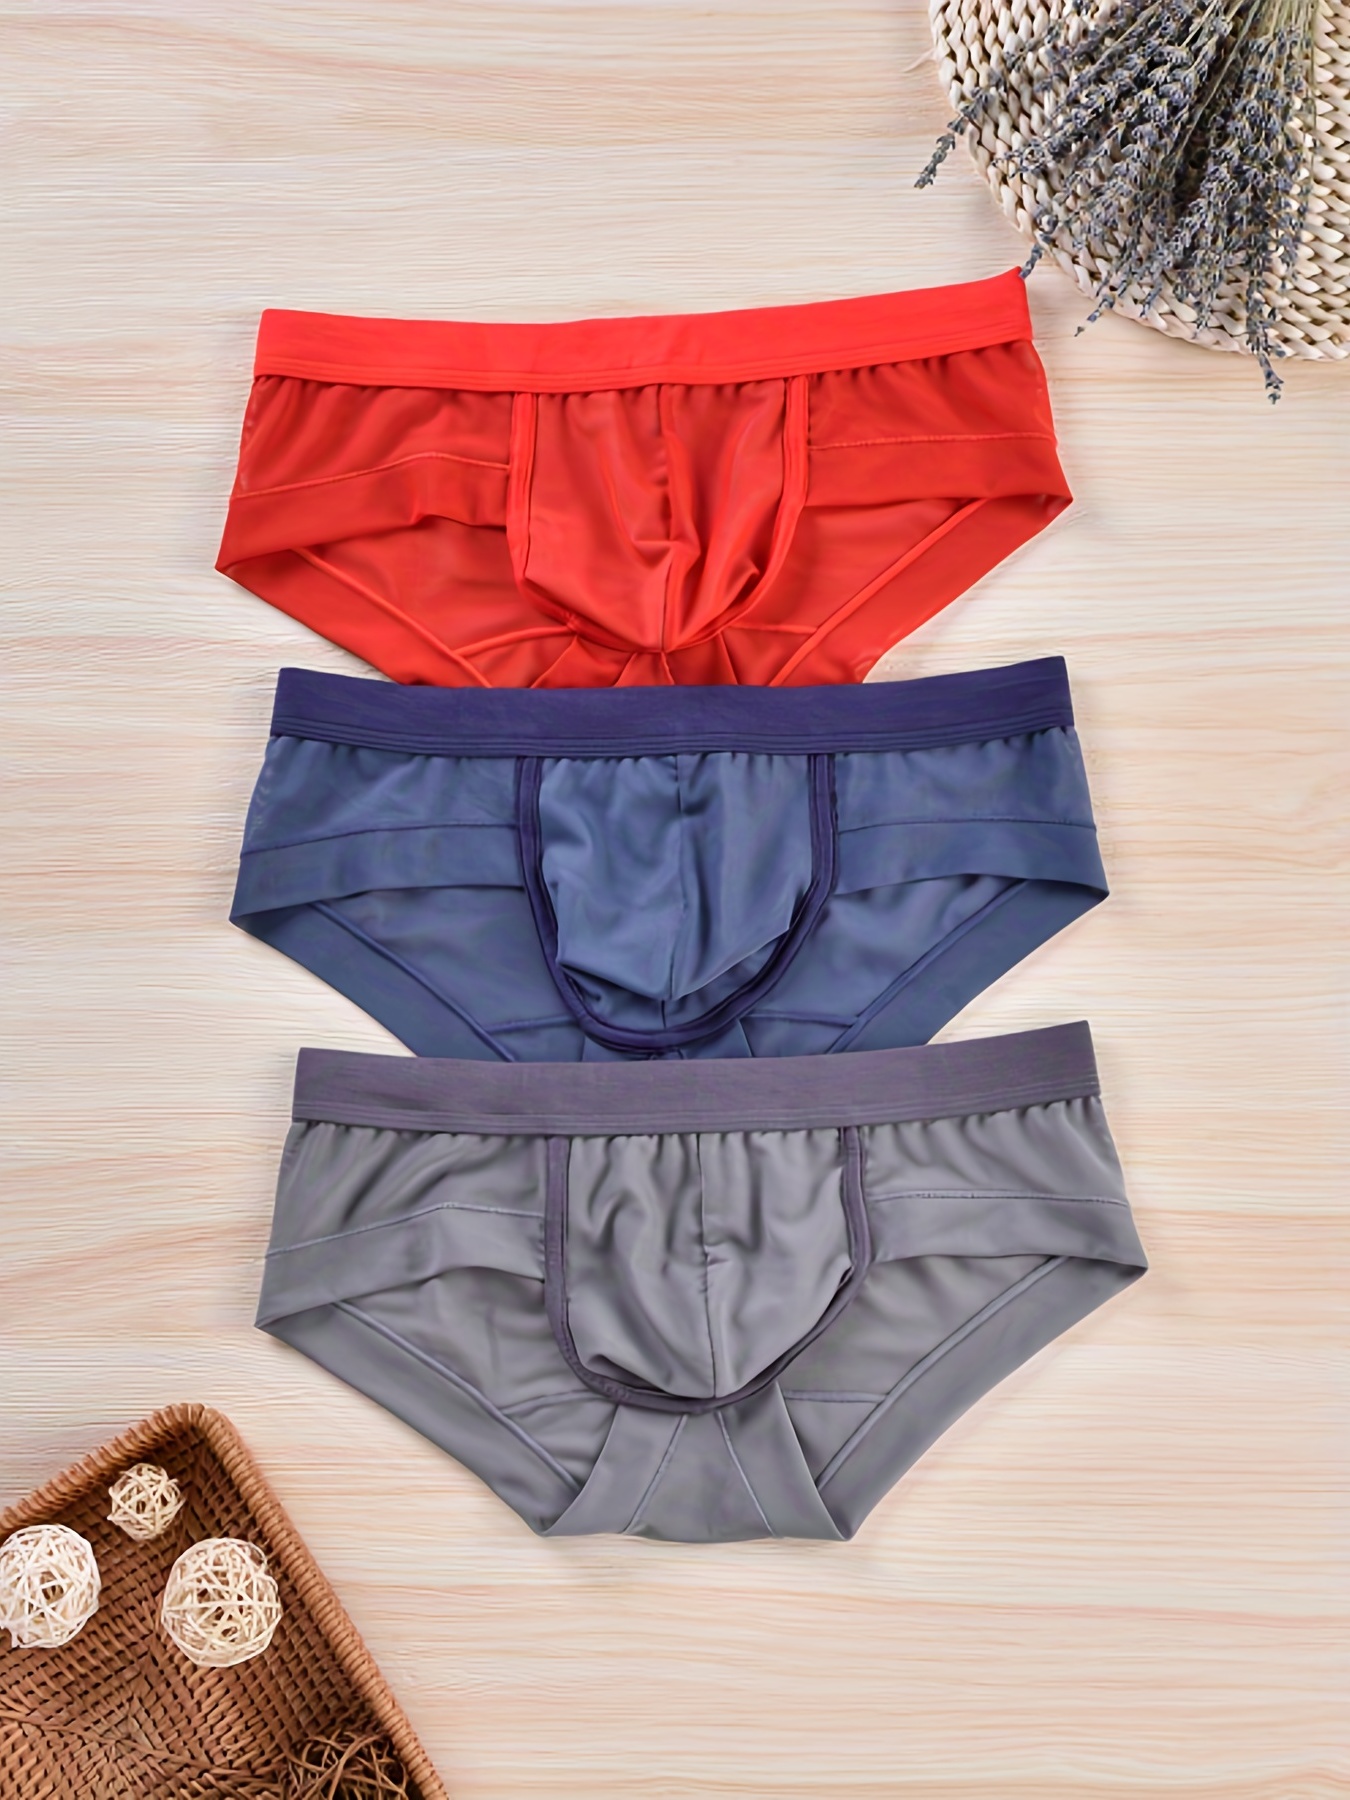 3pcs Men's Lingerie Panties, Fashion * Briefs, Breathable Comfy Stretchy  Quick Drying Sports Briefs, Men's Underwear Bikini, Multicolor Set